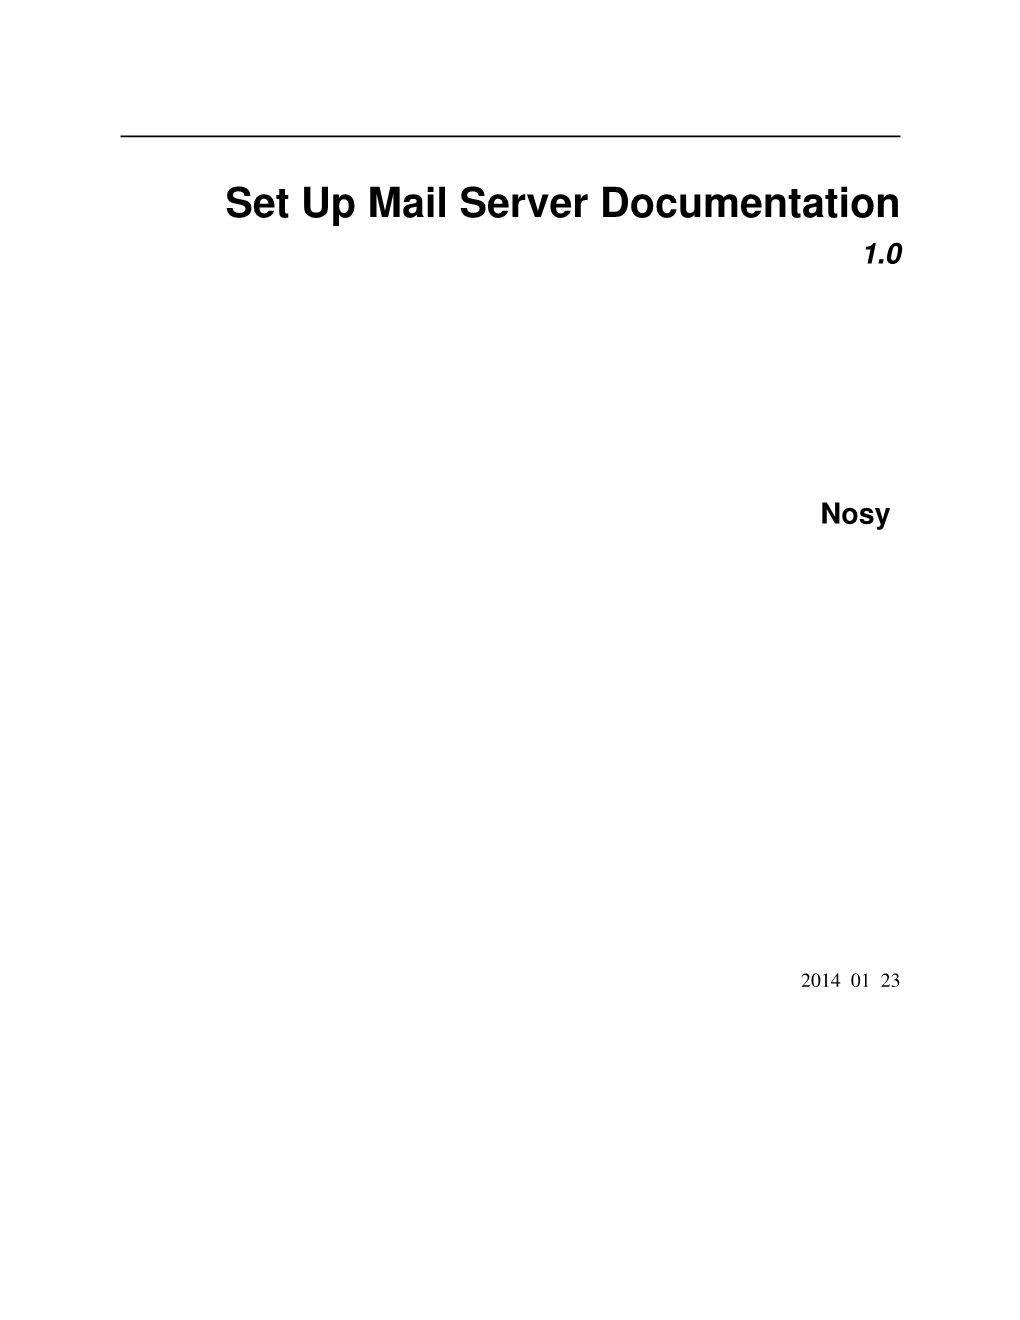 Set up Mail Server Documentation 1.0